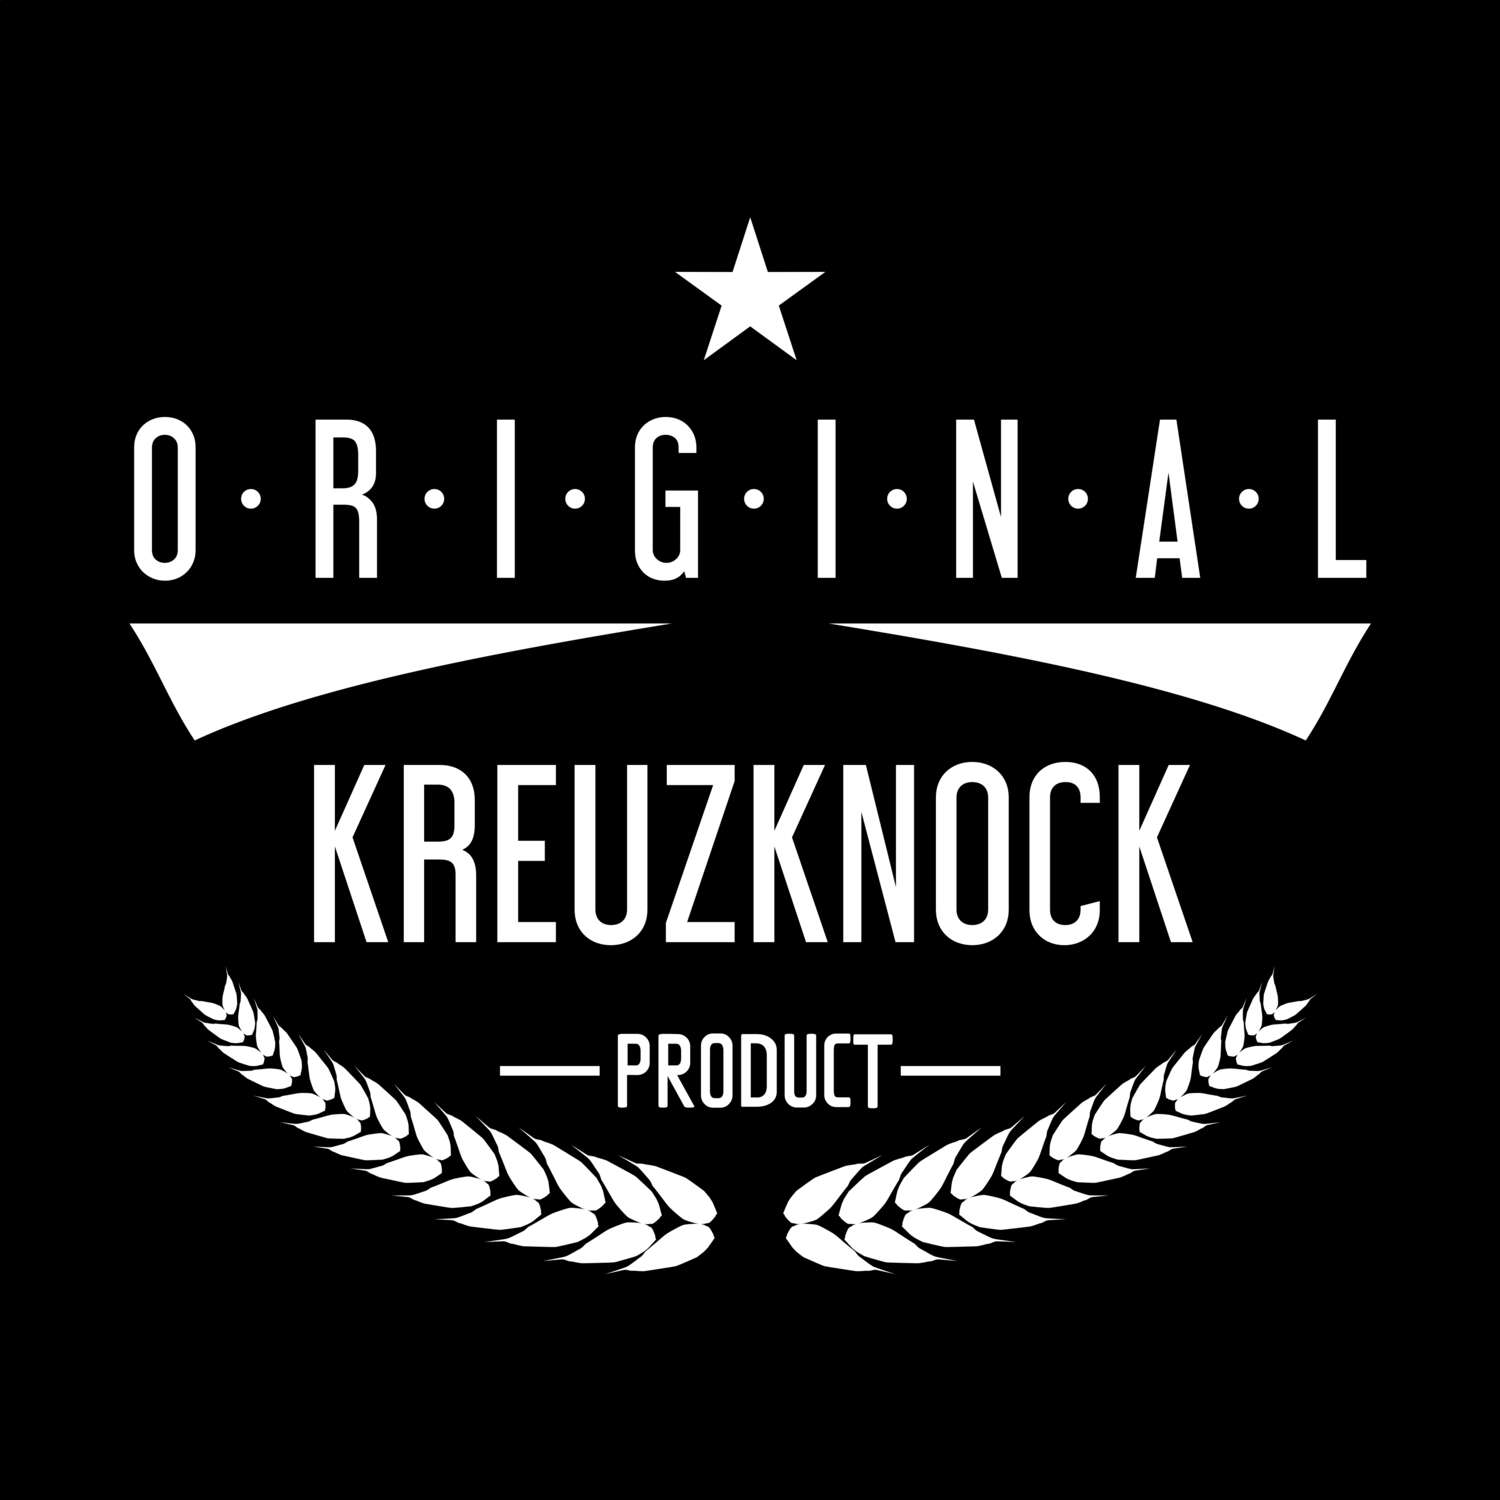 Kreuzknock T-Shirt »Original Product«